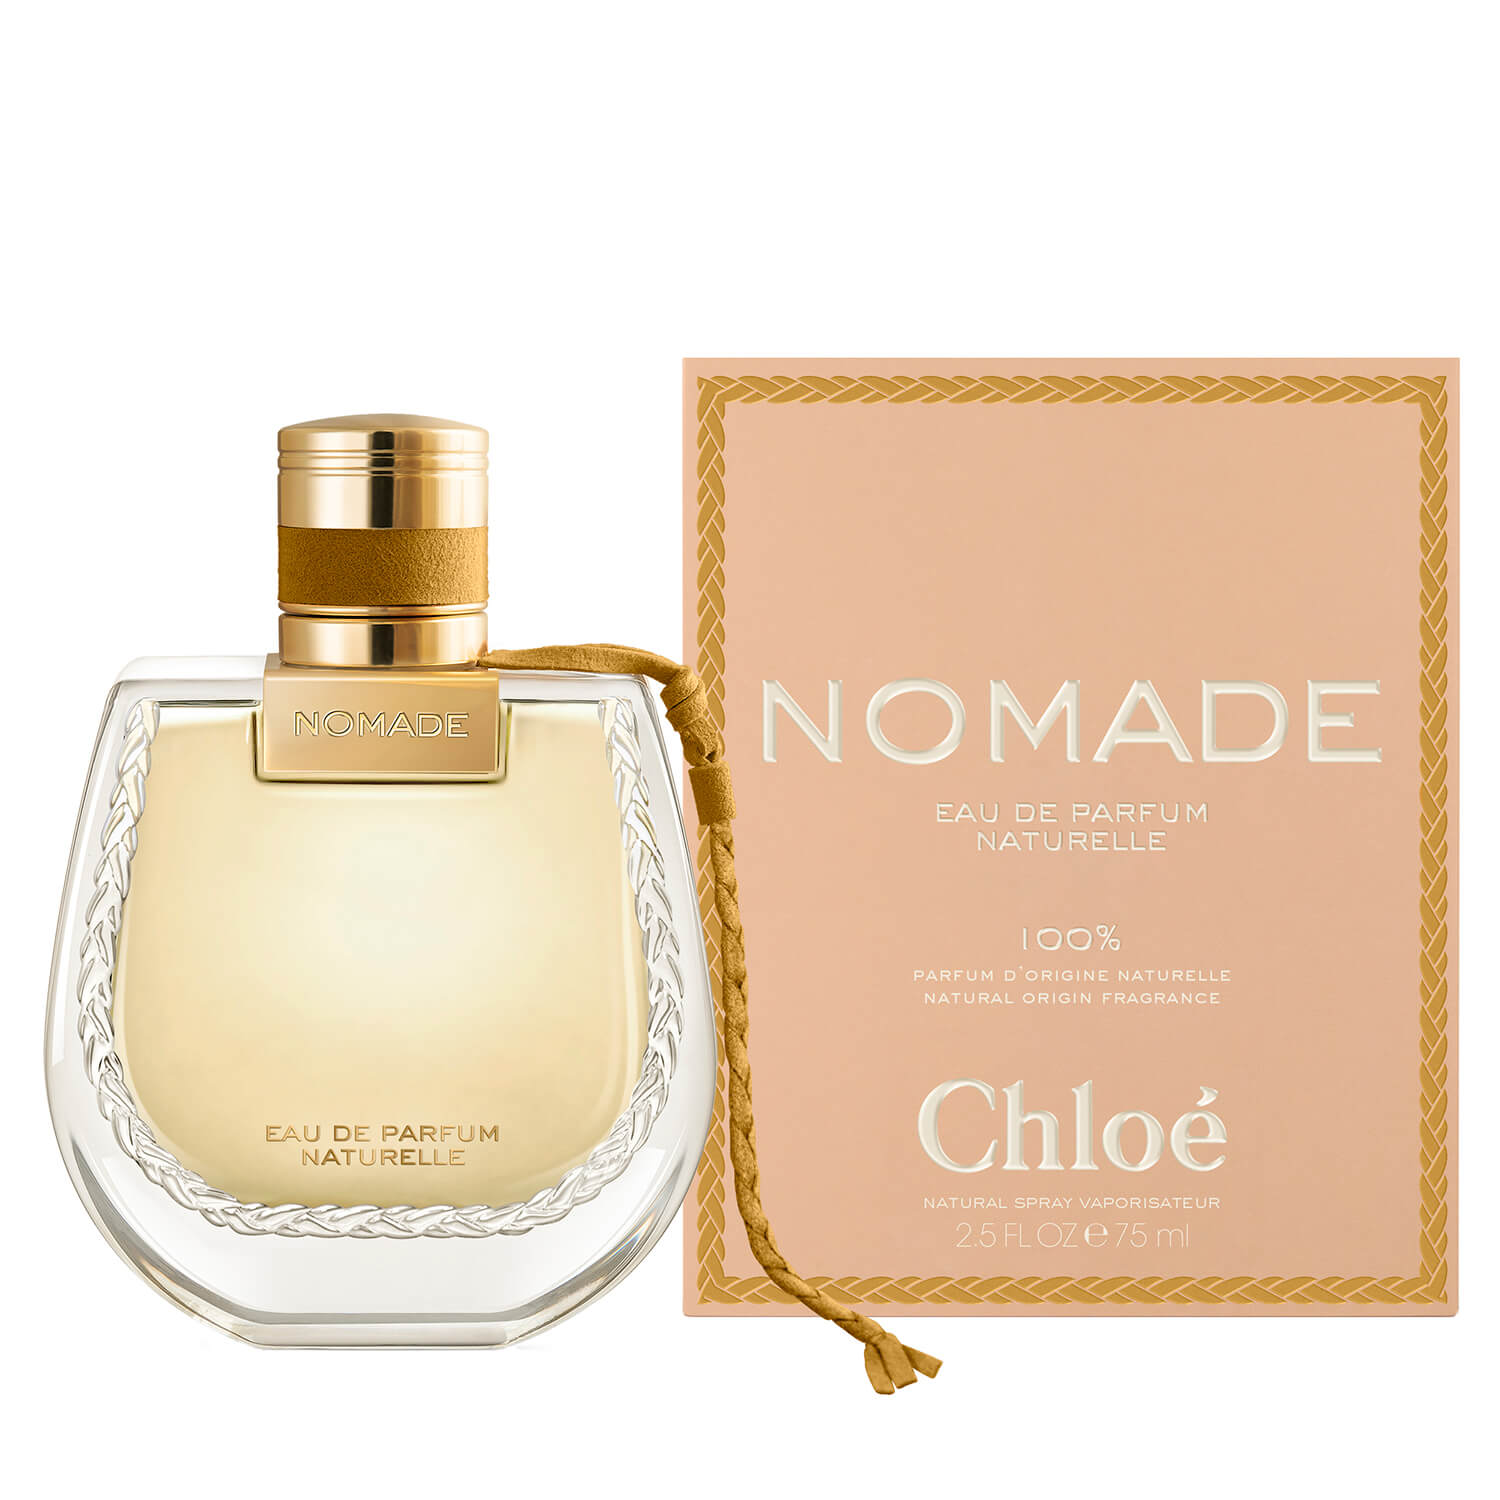 Chloe Nomade Eau de Parfum Naturelle 1 Shaws Department Stores